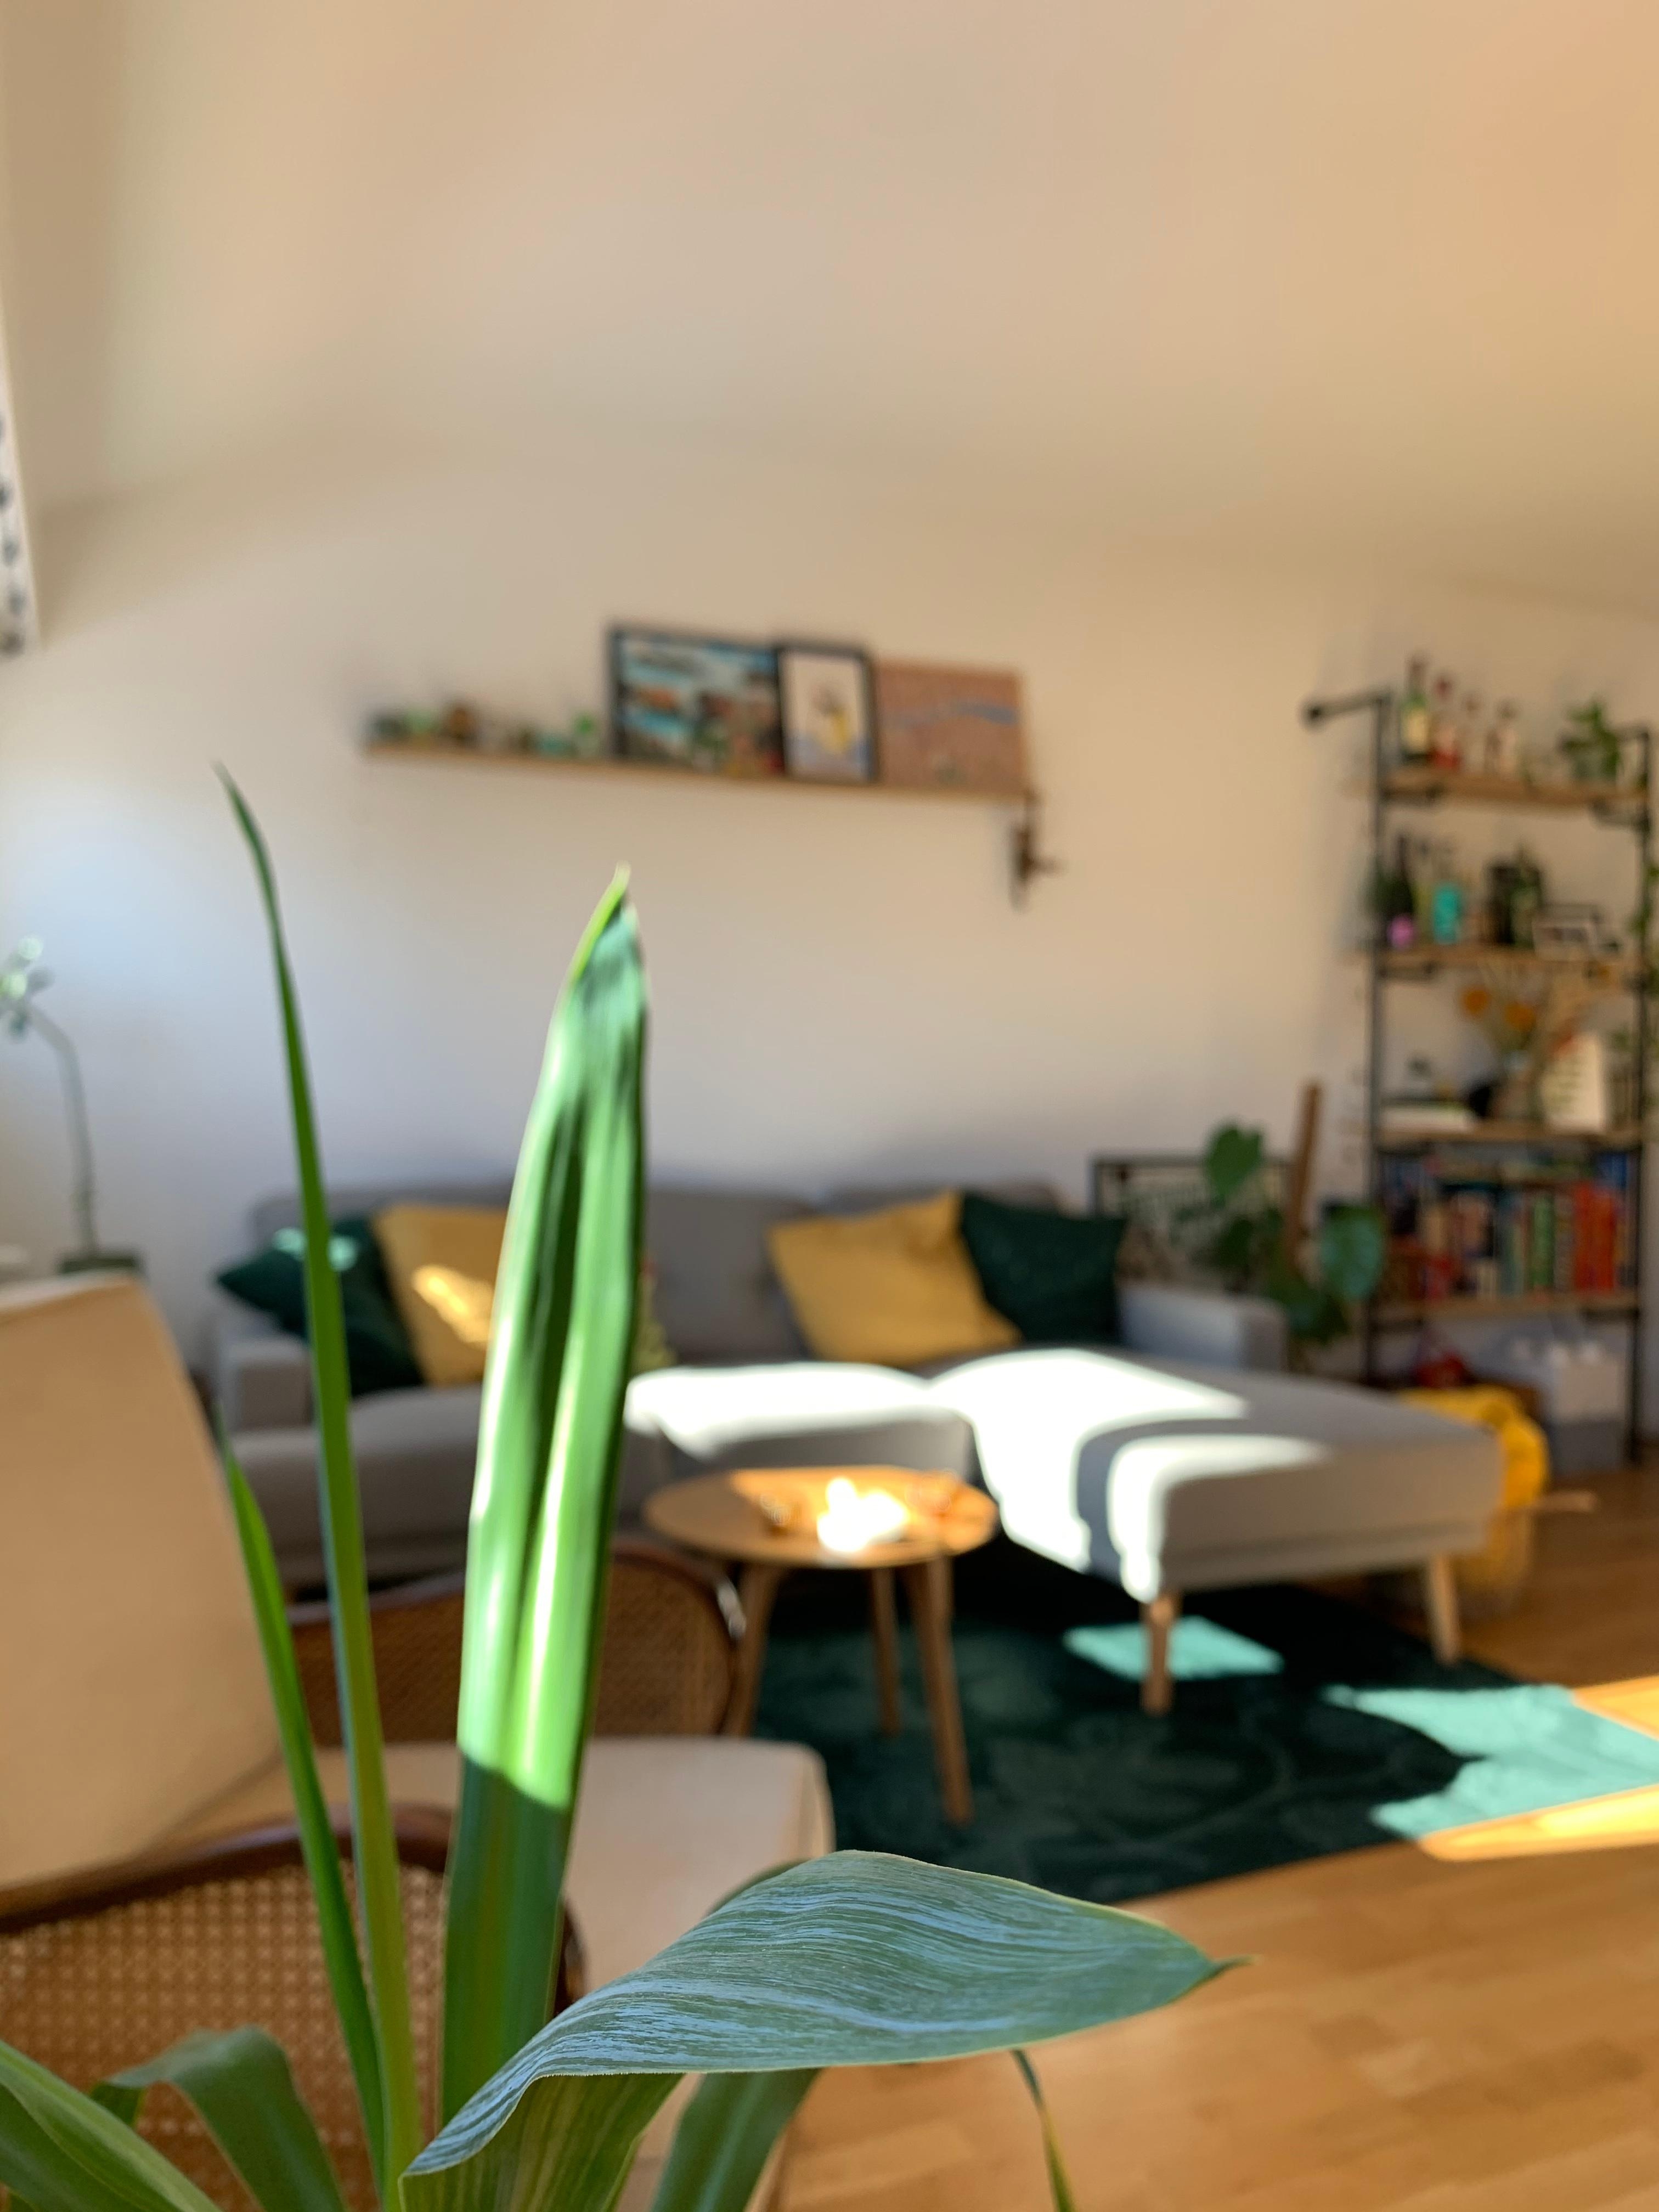 Wohnzimmerliebe ❤️
#livingroom #wohnzimmer #plants 